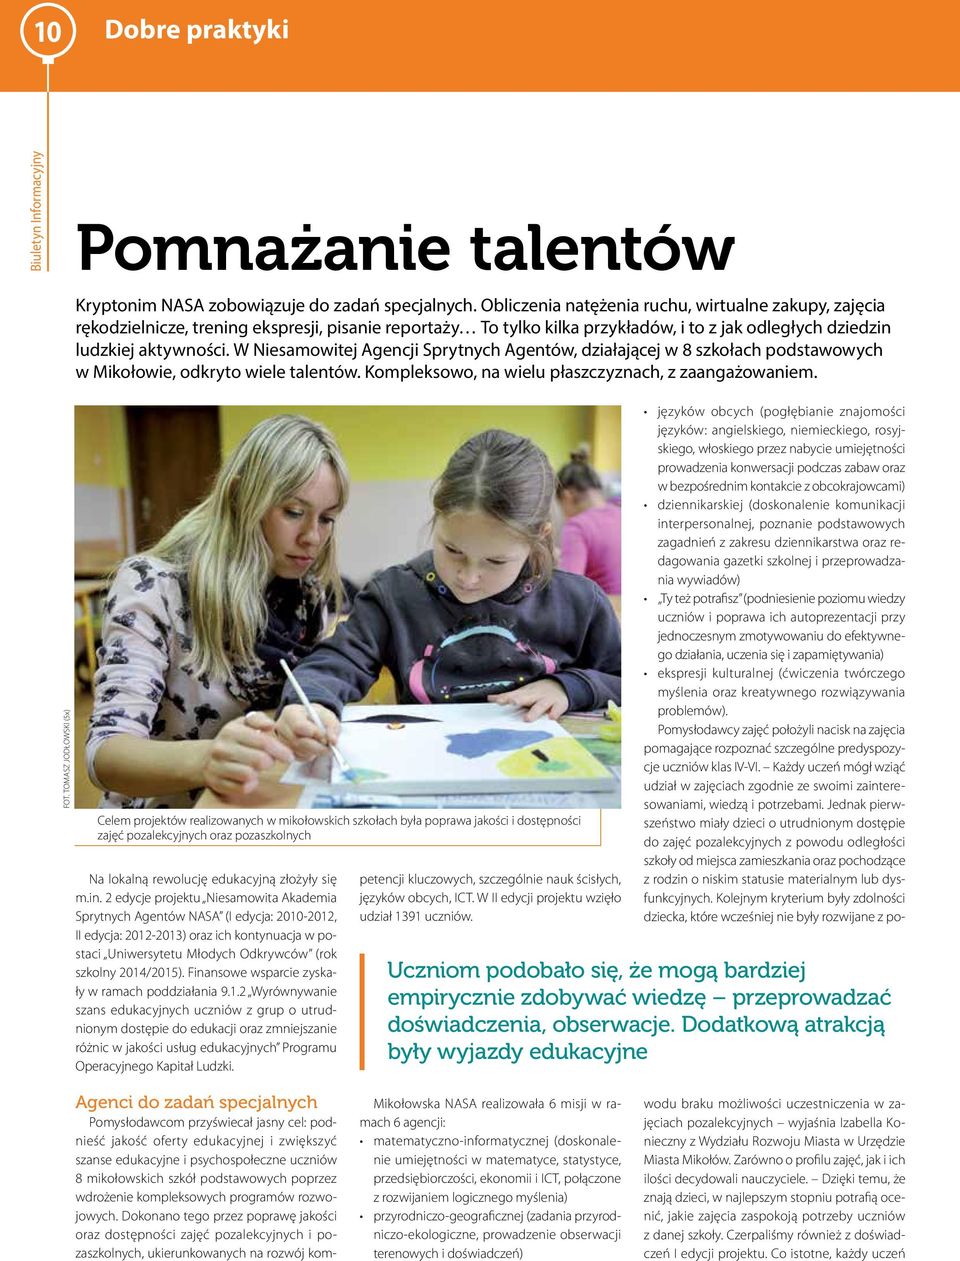 W Niesamowitej Agencji Sprytnych Agentów, działającej w 8 szkołach podstawowych w Mikołowie, odkryto wiele talentów. Kompleksowo, na wielu płaszczyznach, z zaangażowaniem.